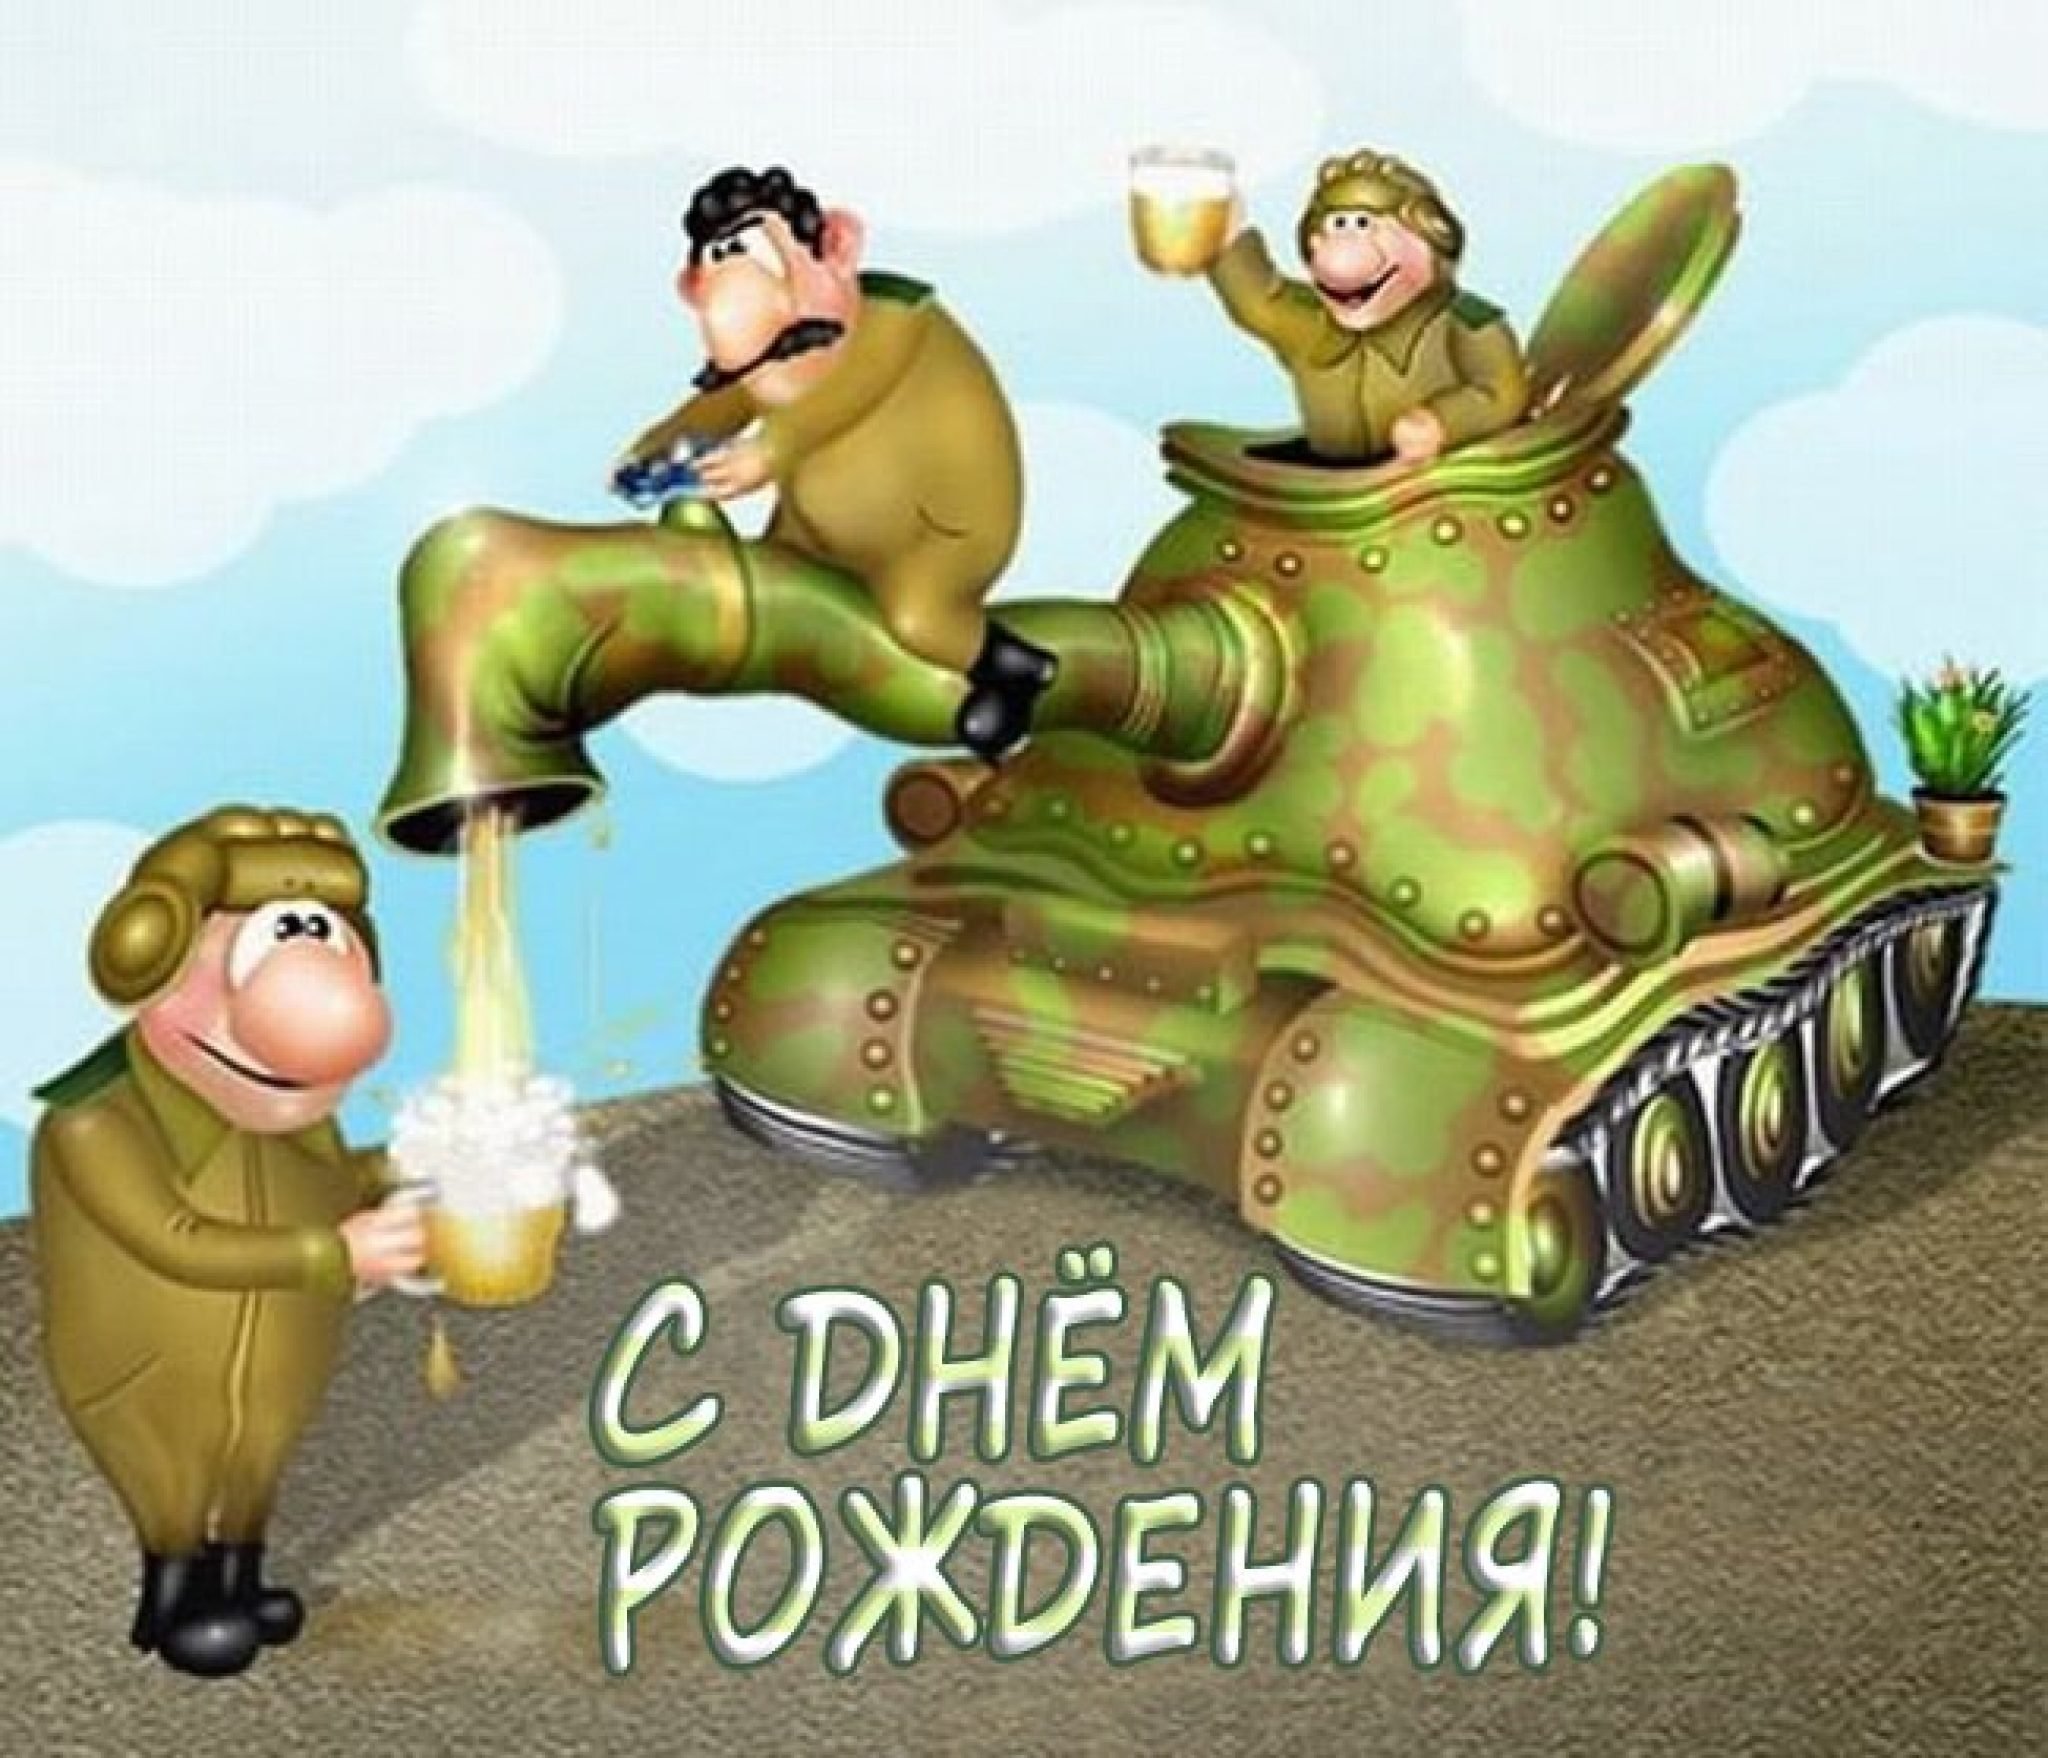 День танкиста открытки поздравления - 56 фото